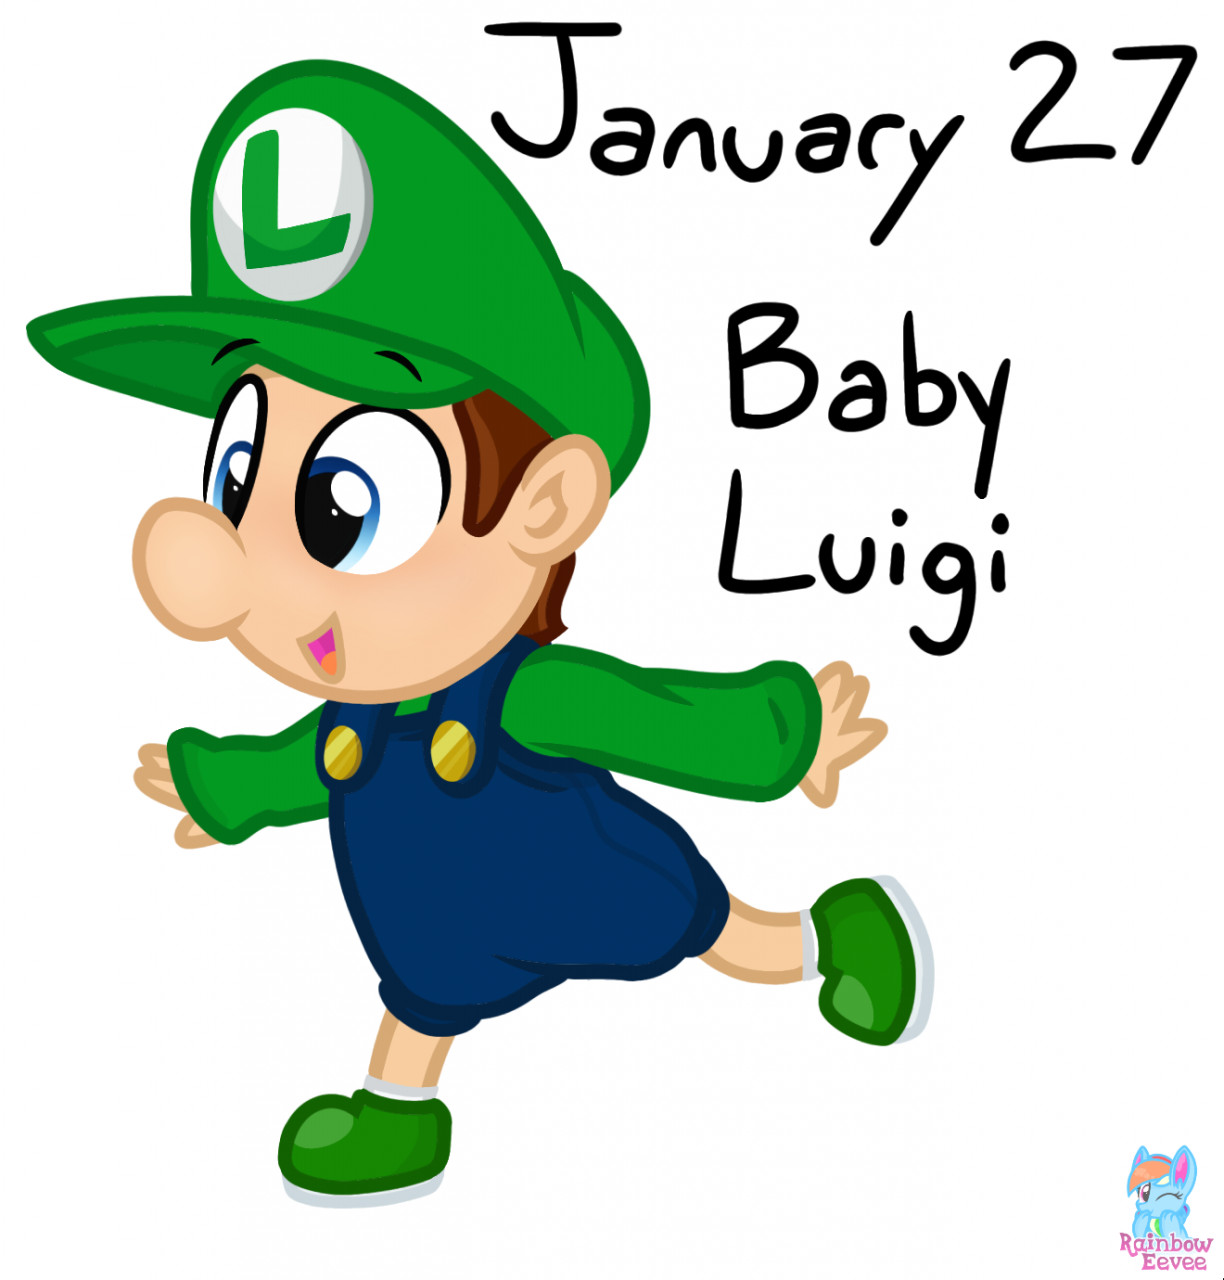 character baby luigi